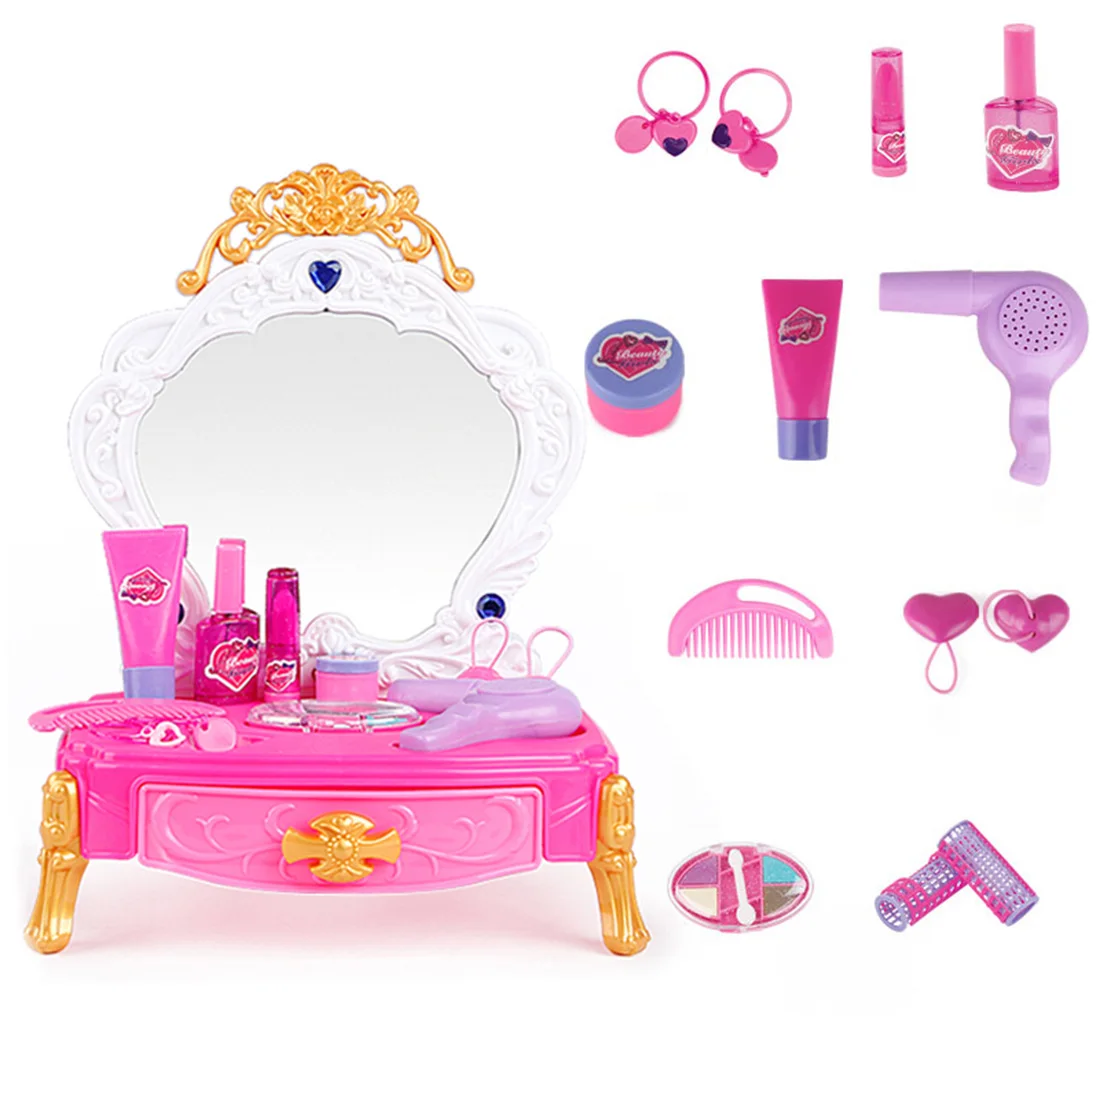 

Детский ролевый макияж, 14 шт., игрушечный туалетный столик, со светом и звуком, развивающие игрушки для детей, подарок на день рождения, розов...